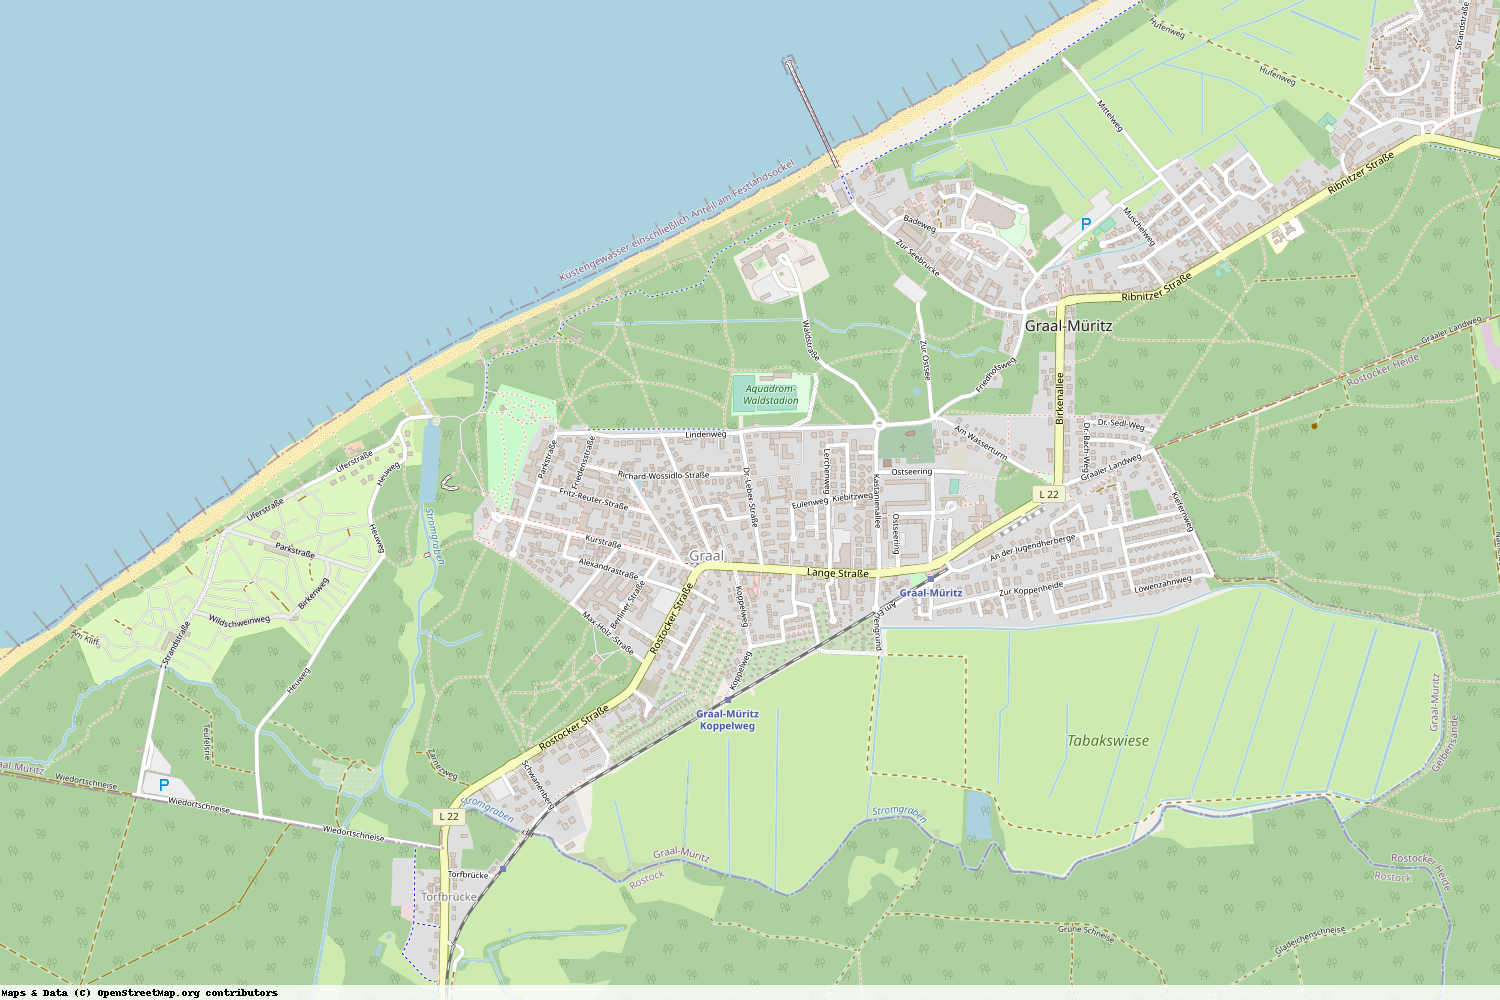 Ist gerade Stromausfall in Mecklenburg-Vorpommern - Rostock - Graal-Müritz?